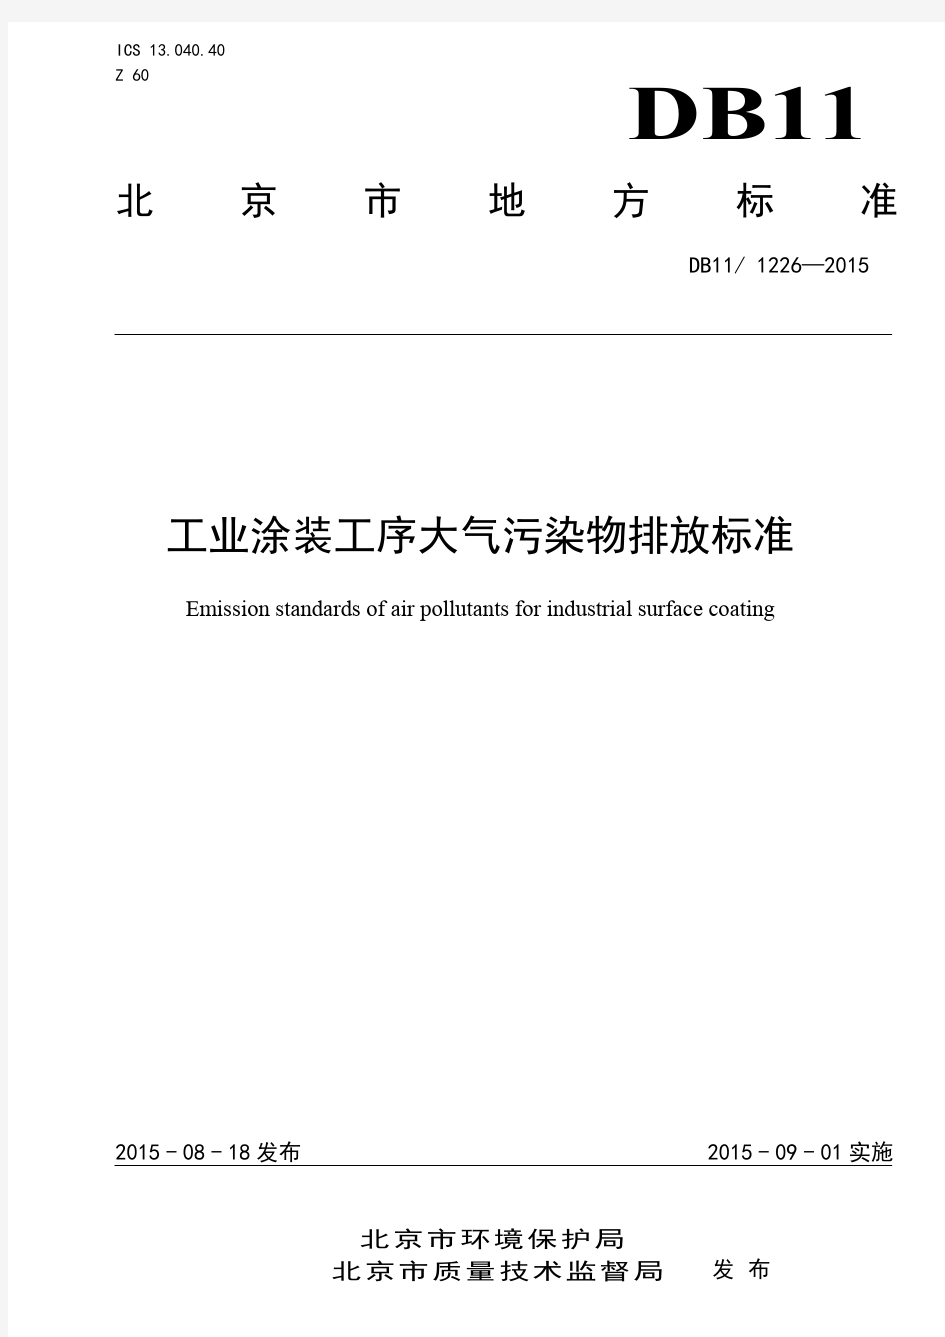 工业涂装工序大气污染物排放标准(DB11 1226-2015)